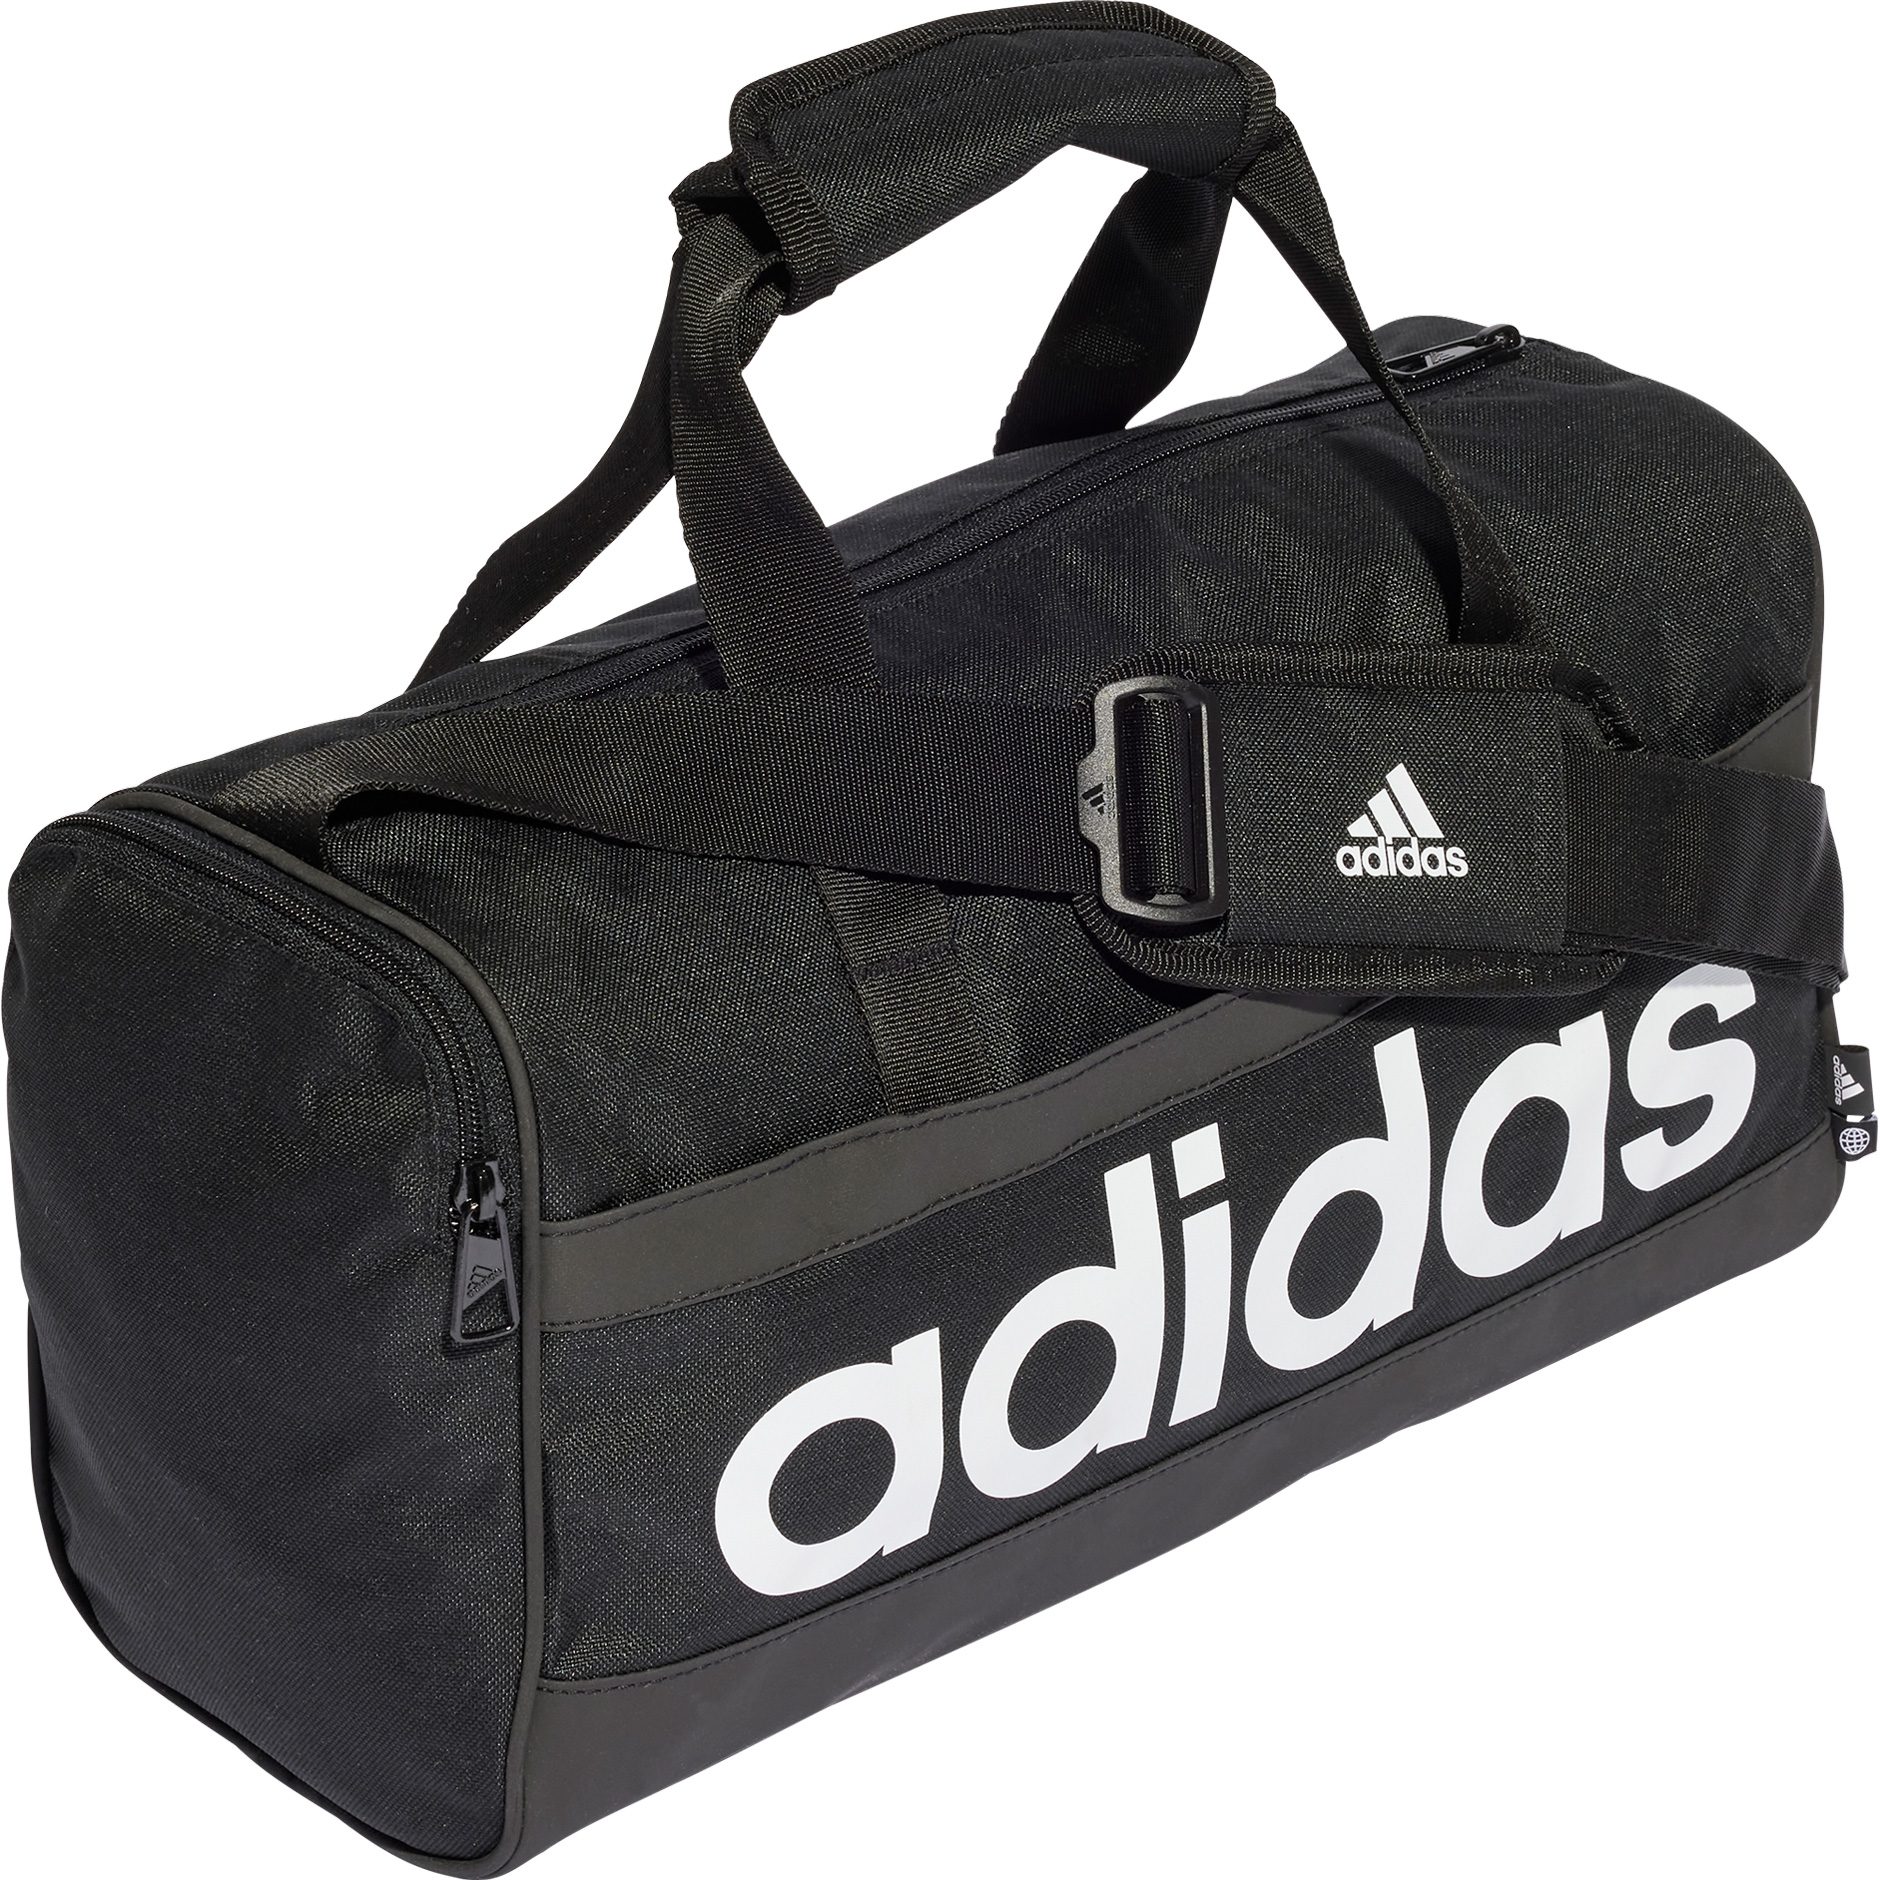 adidas - Essentials Linear Duffel at Bag Shop Bittl Kids Sport XS black